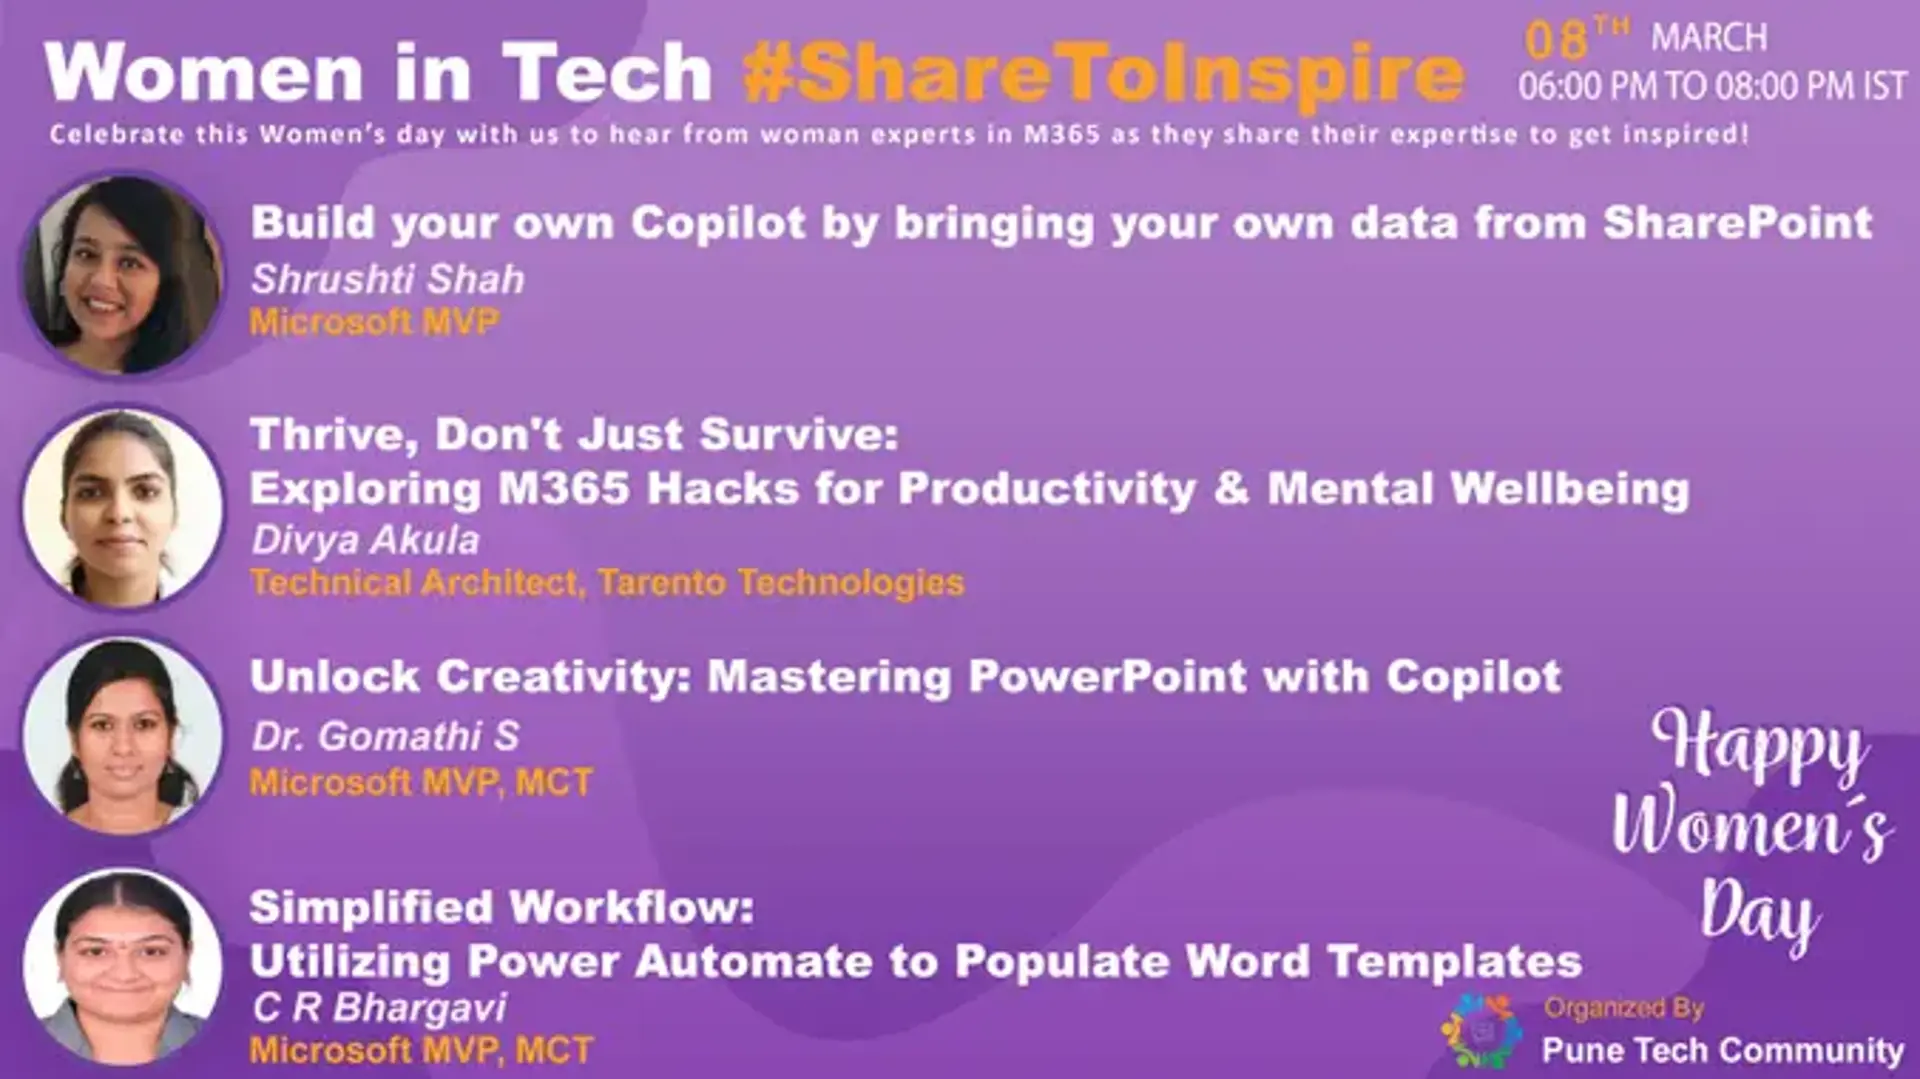 Women in Tech #ShareToInspire